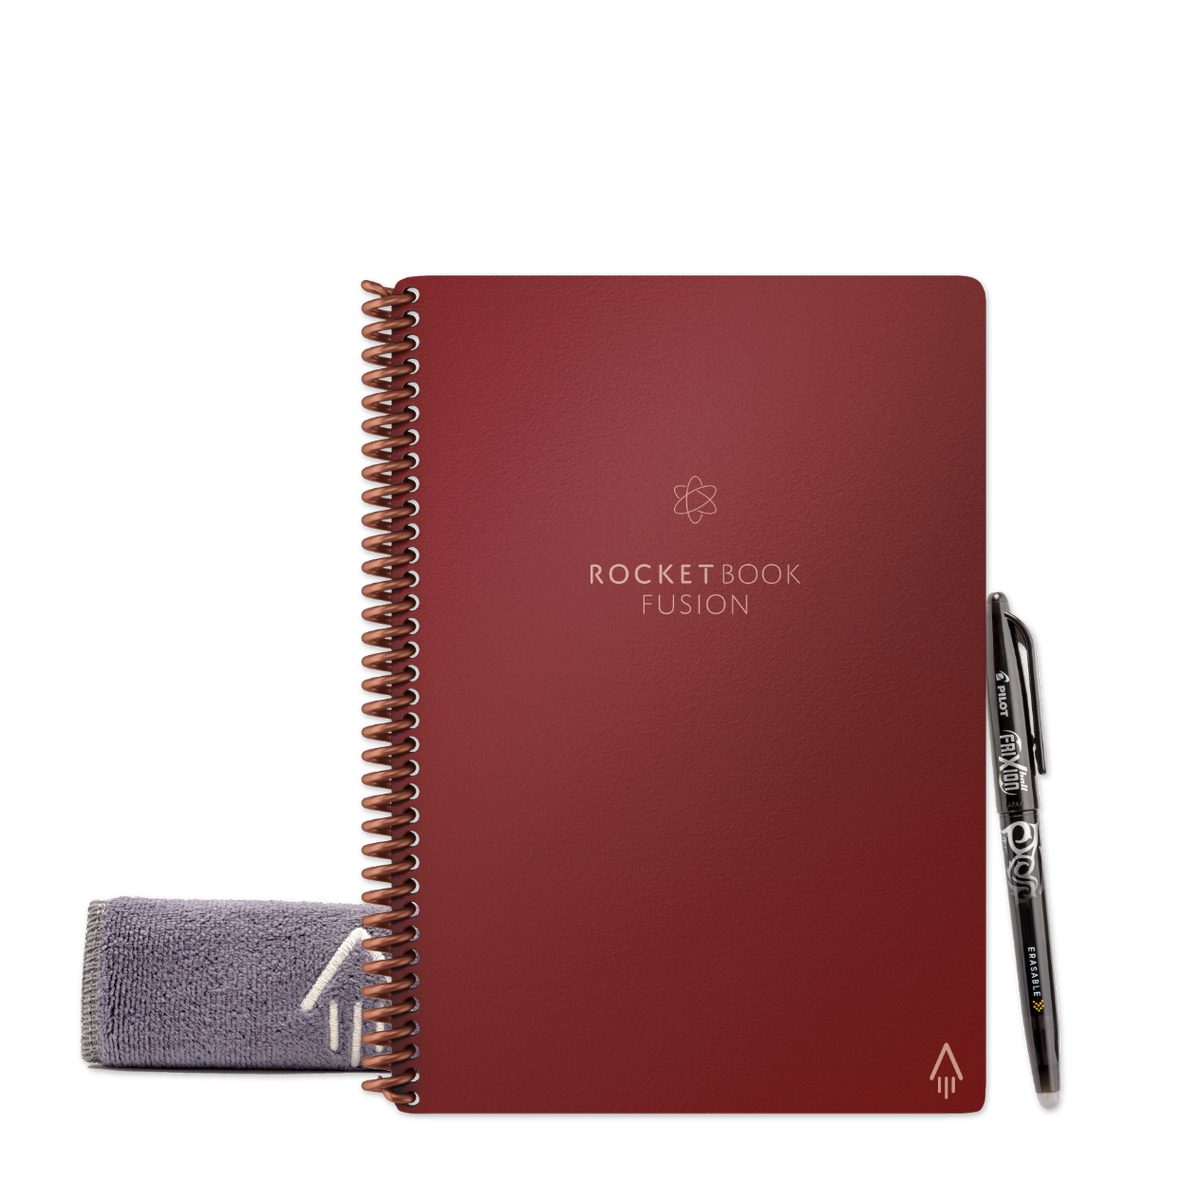 App-Anbindung - Everlast Rocketbook Notiz- Book Tagging Scarlet Sky, und und Skizzenbuch FUSION Symbol Rocket Notizbuch mit